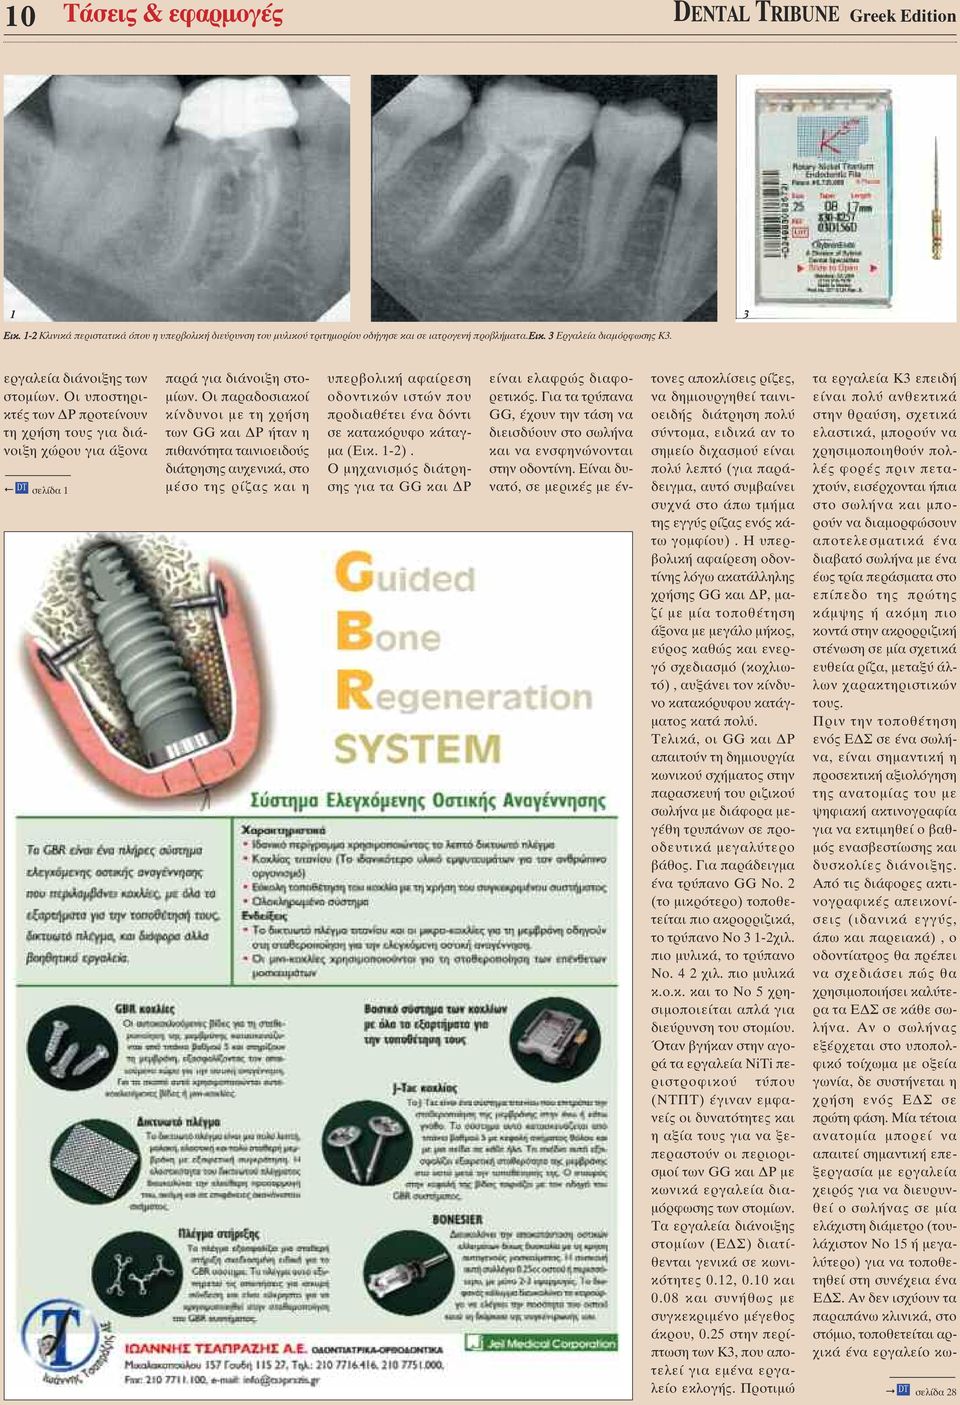 Οι παραδοσιακοί κίνδυνοι µε τη χρήση των GG και Ρ ήταν η πιθανότητα ταινιοειδούς διάτρησης αυχενικά, στο µέσο της ρίζας και η υπερβολική αφαίρεση οδοντικών ιστών που προδιαθέτει ένα δόντι σε